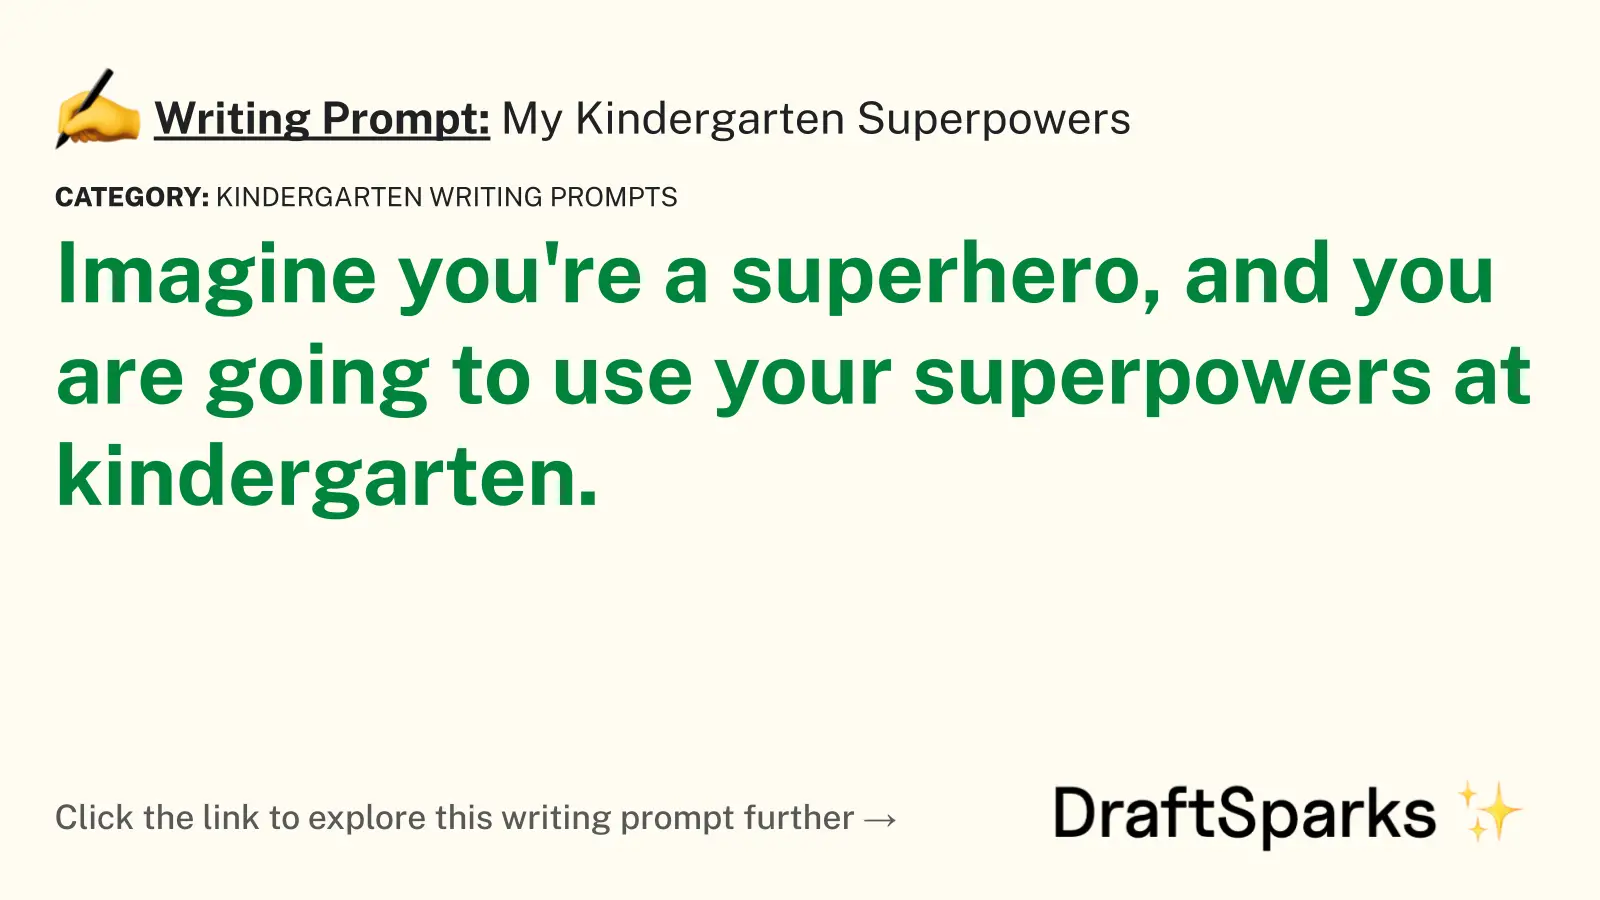 My Kindergarten Superpowers